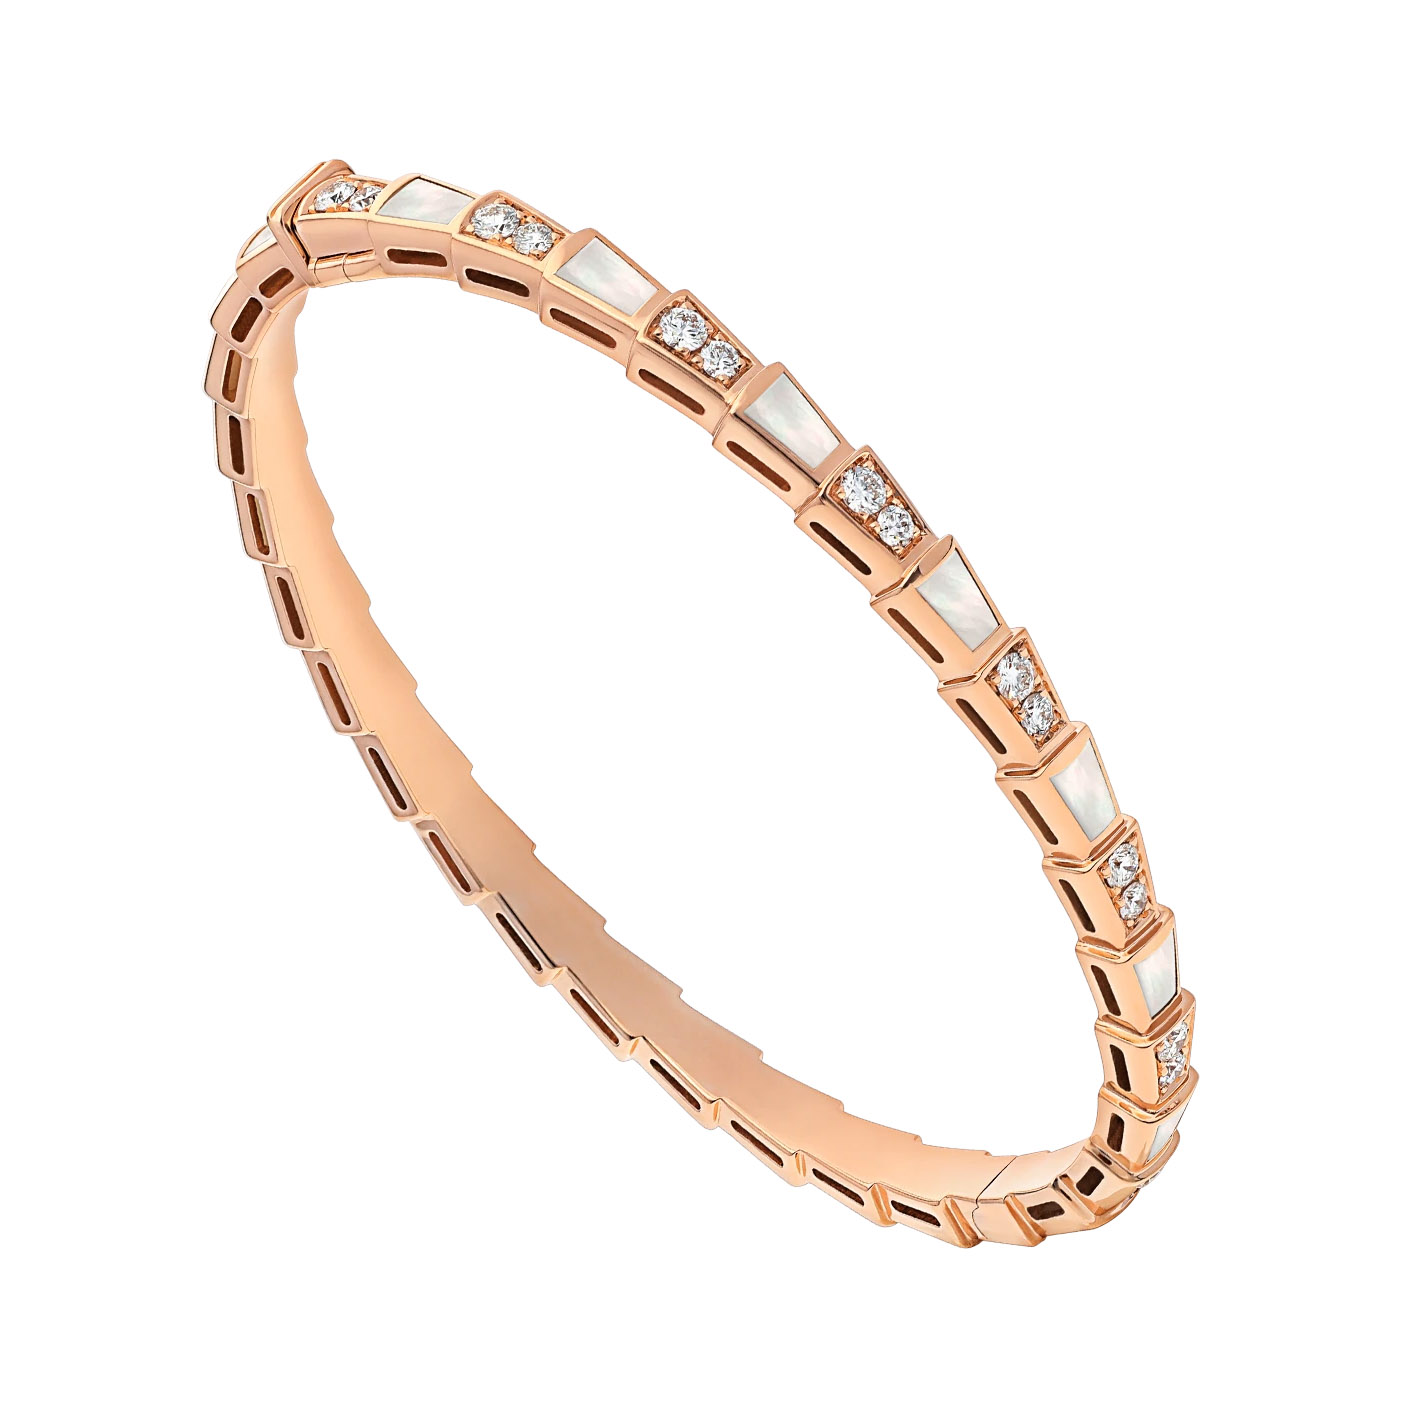 Gioielli OEM / ODM all'ingrosso Bracciale in oro rosa 18 carati dal design personalizzato con elementi in madreperla e pavé di diamanti Fabbrica di gioielli OEM